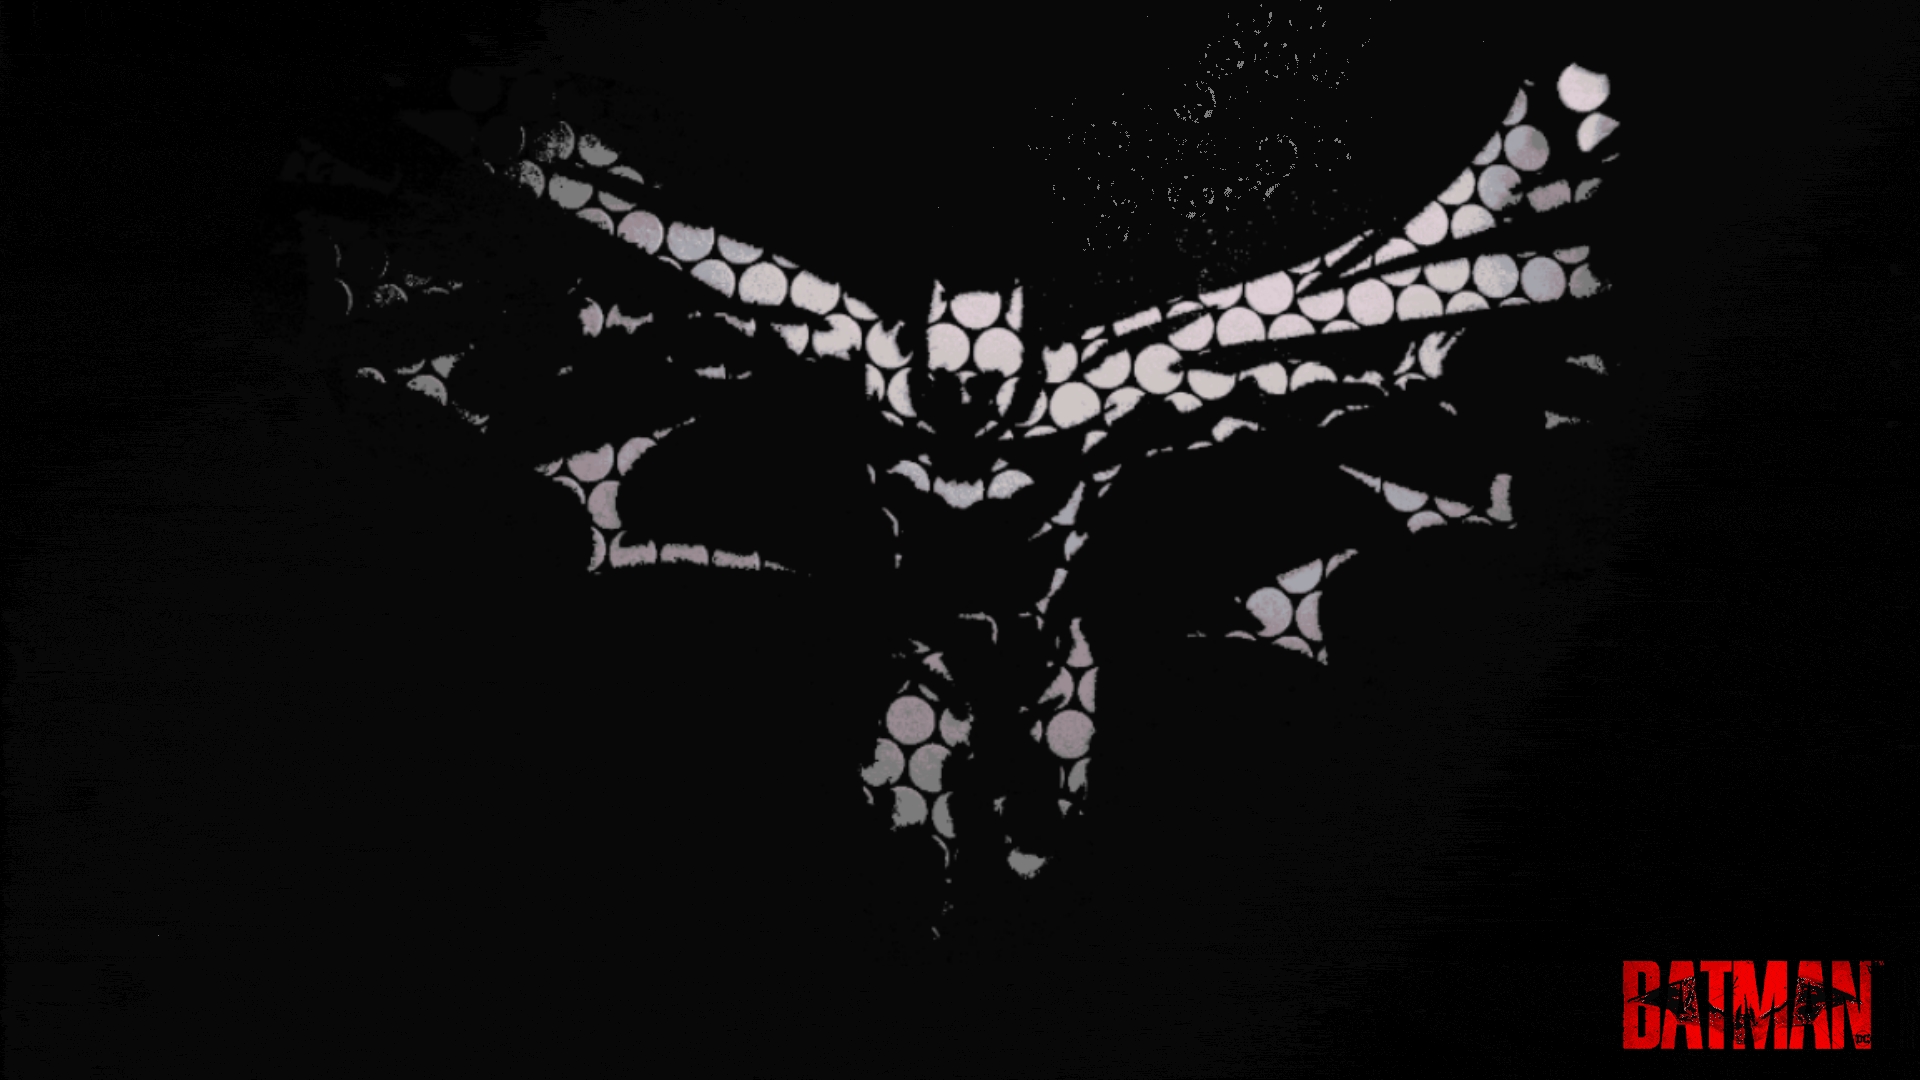 General 1920x1080 Batman The Batman (2022) black background dark DC Comics vector Batman logo